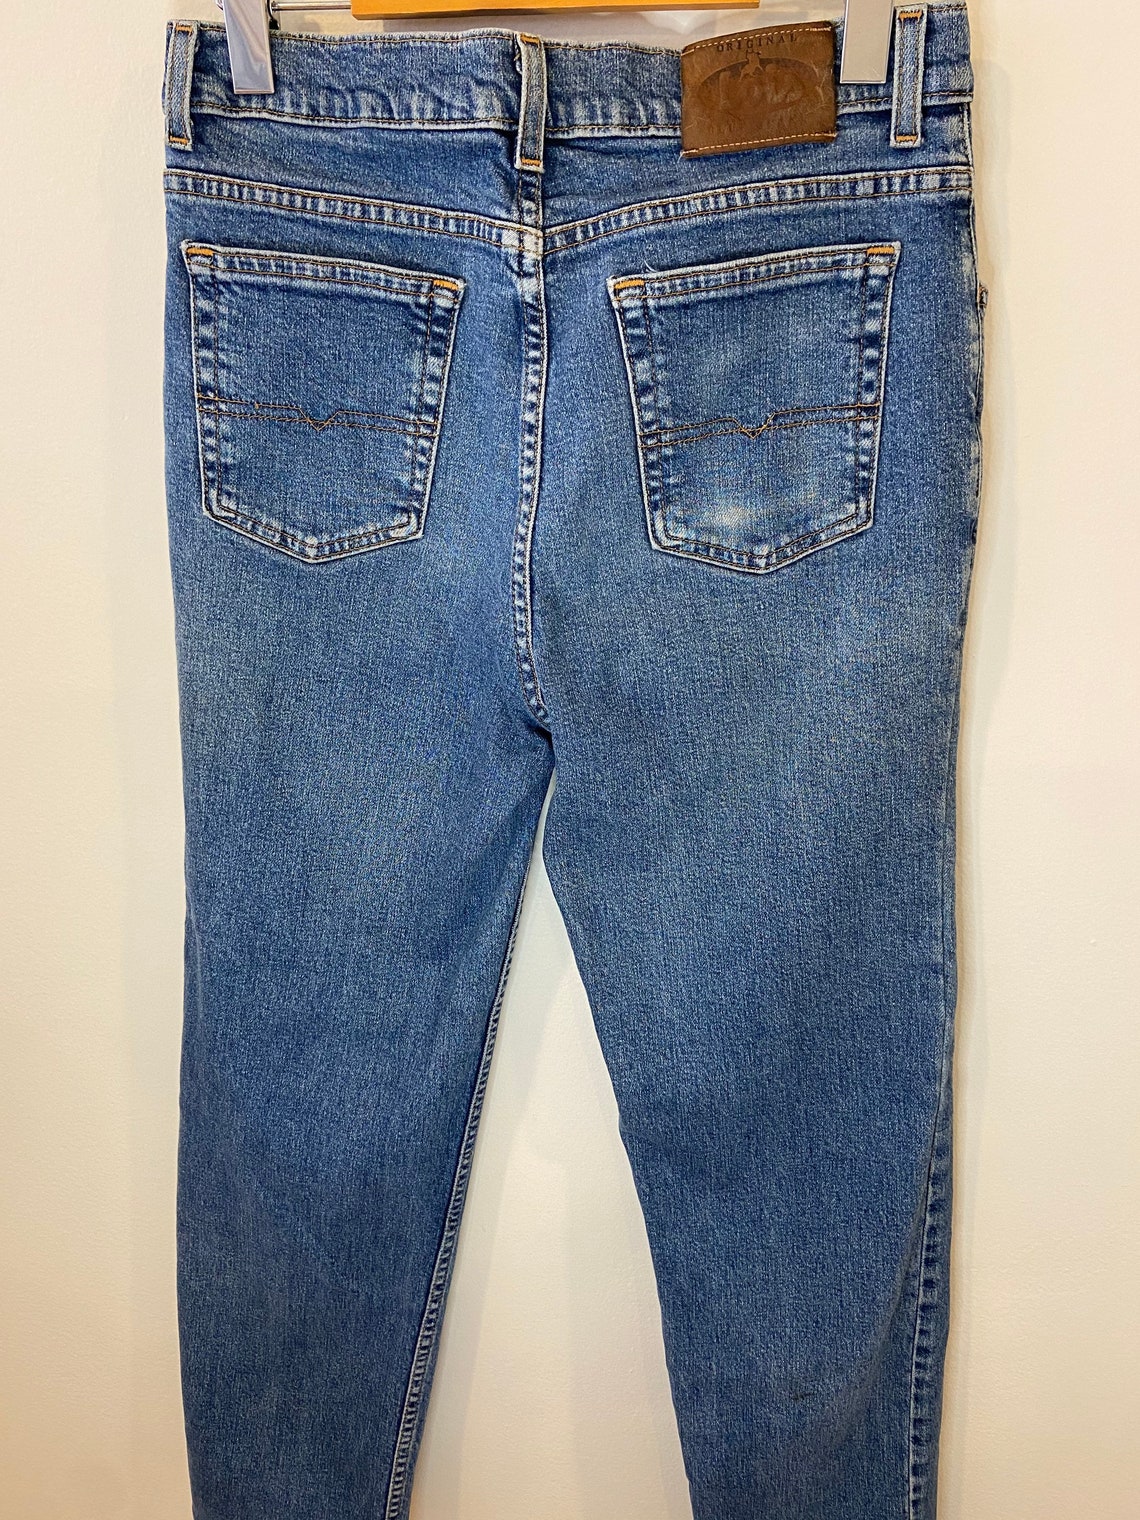 Vintage Lois jeans denim pants blue wash jeans 90s denim | Etsy